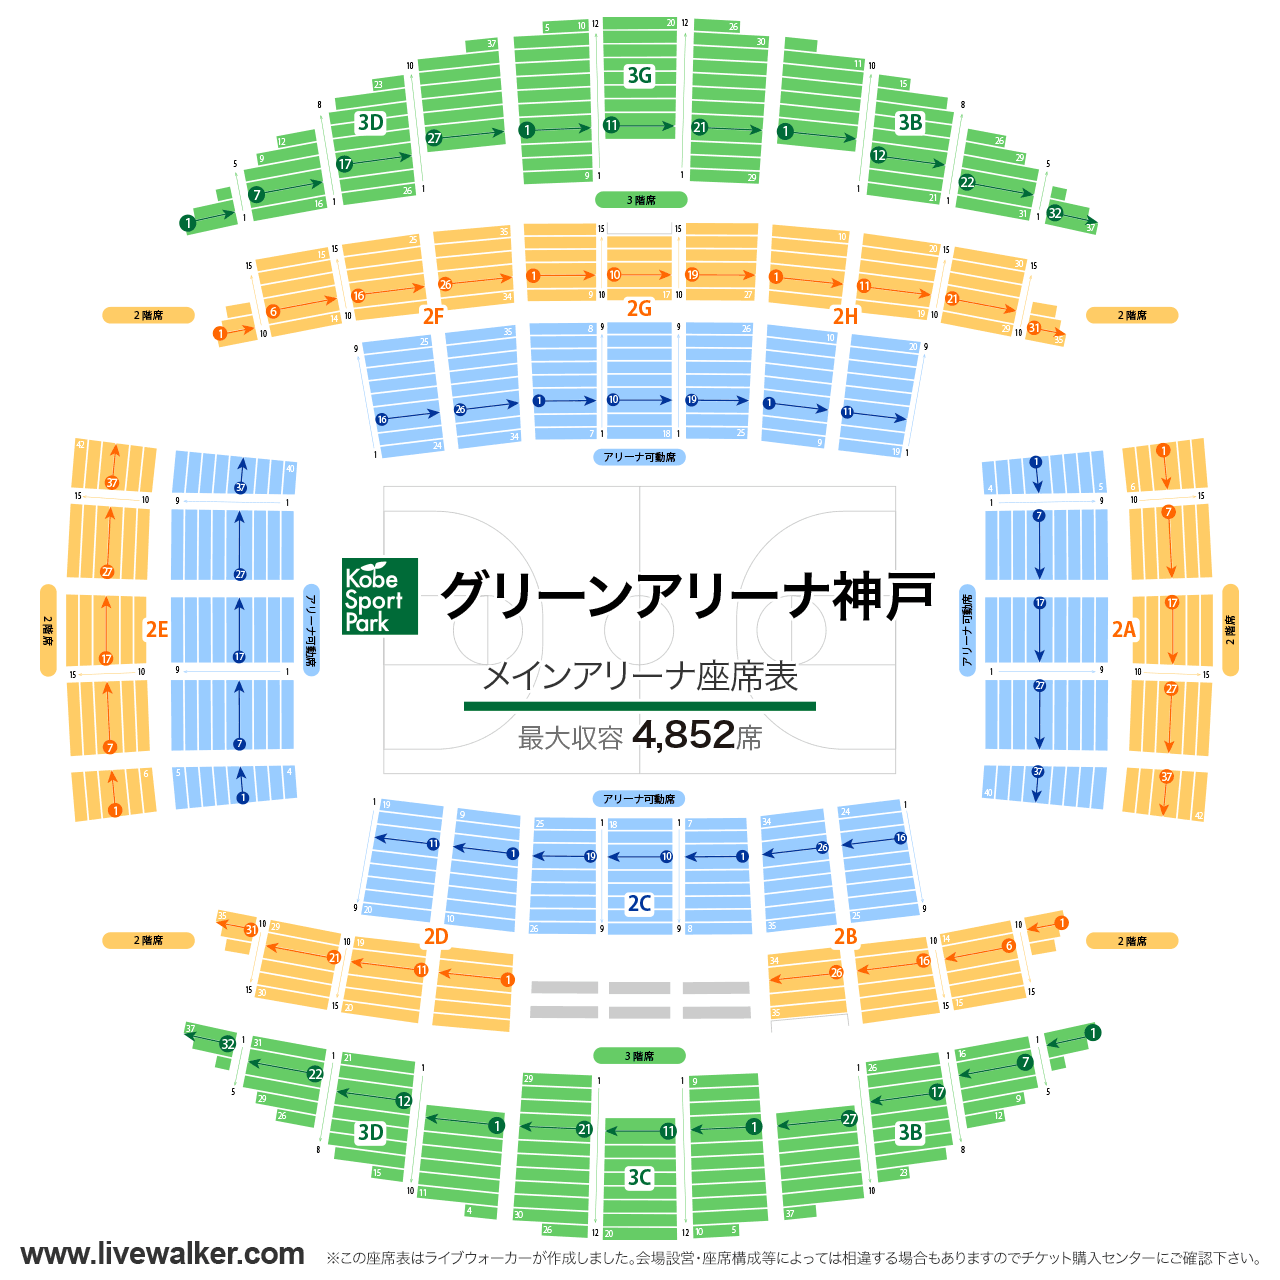 グリーンアリーナ神戸メインアリーナの座席表